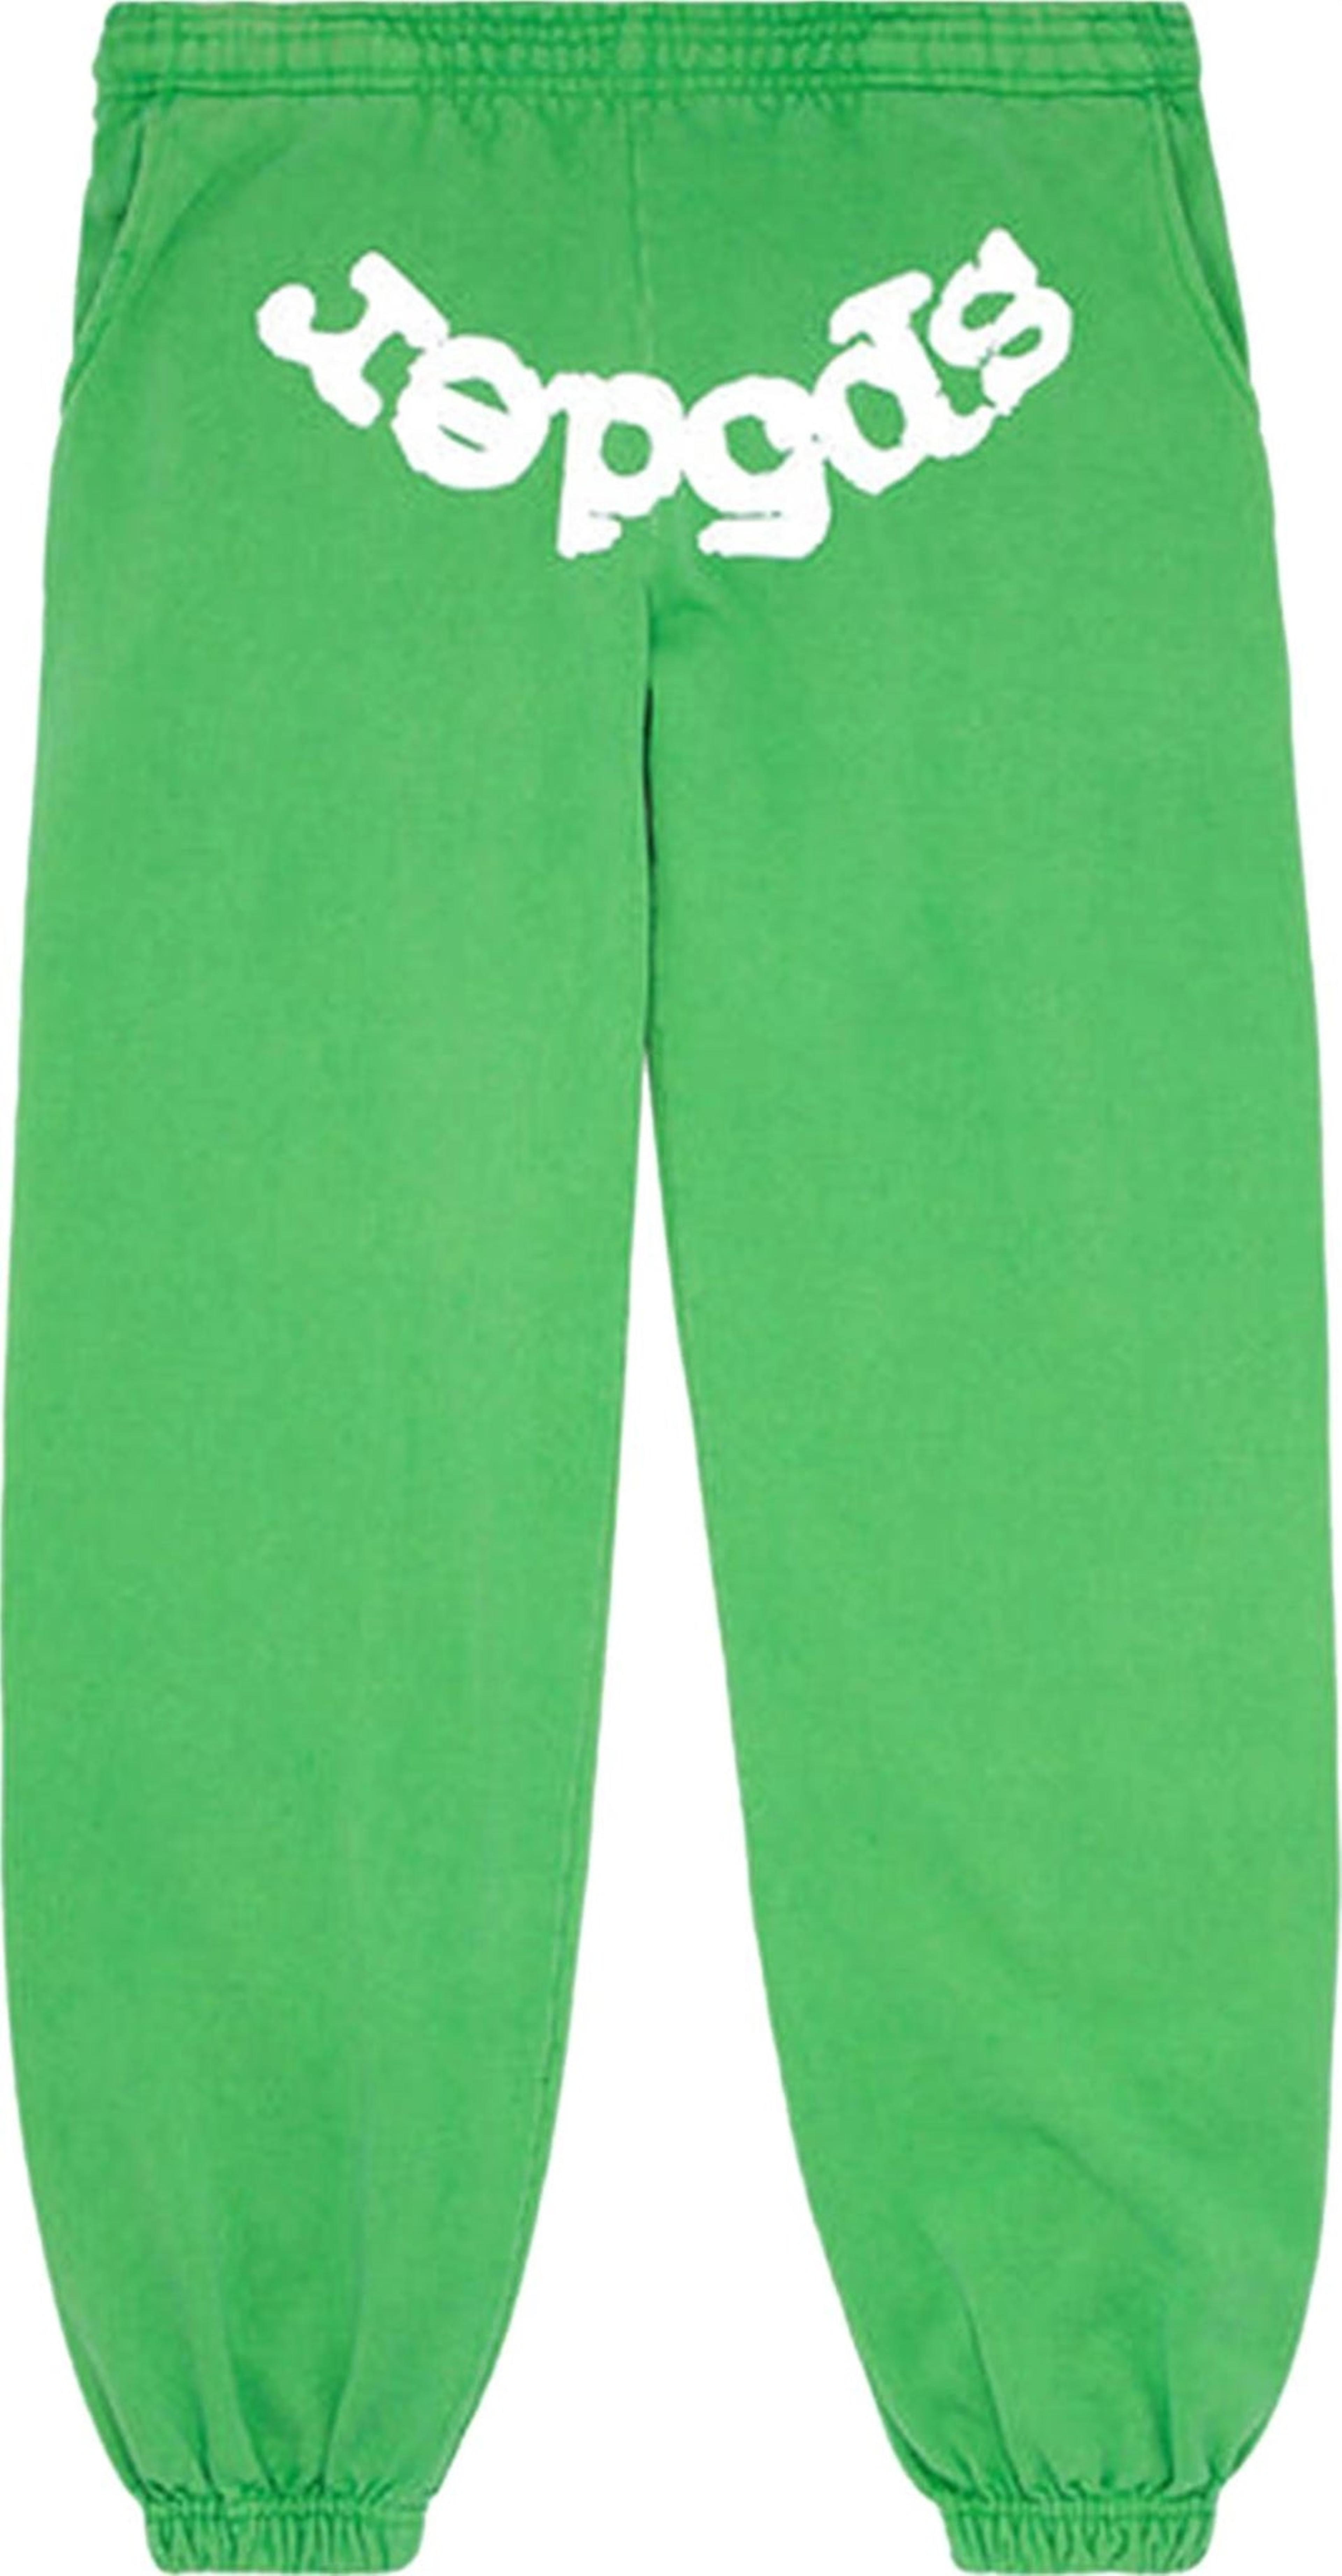 Sp5der Websuit Sweatpant Slime Green